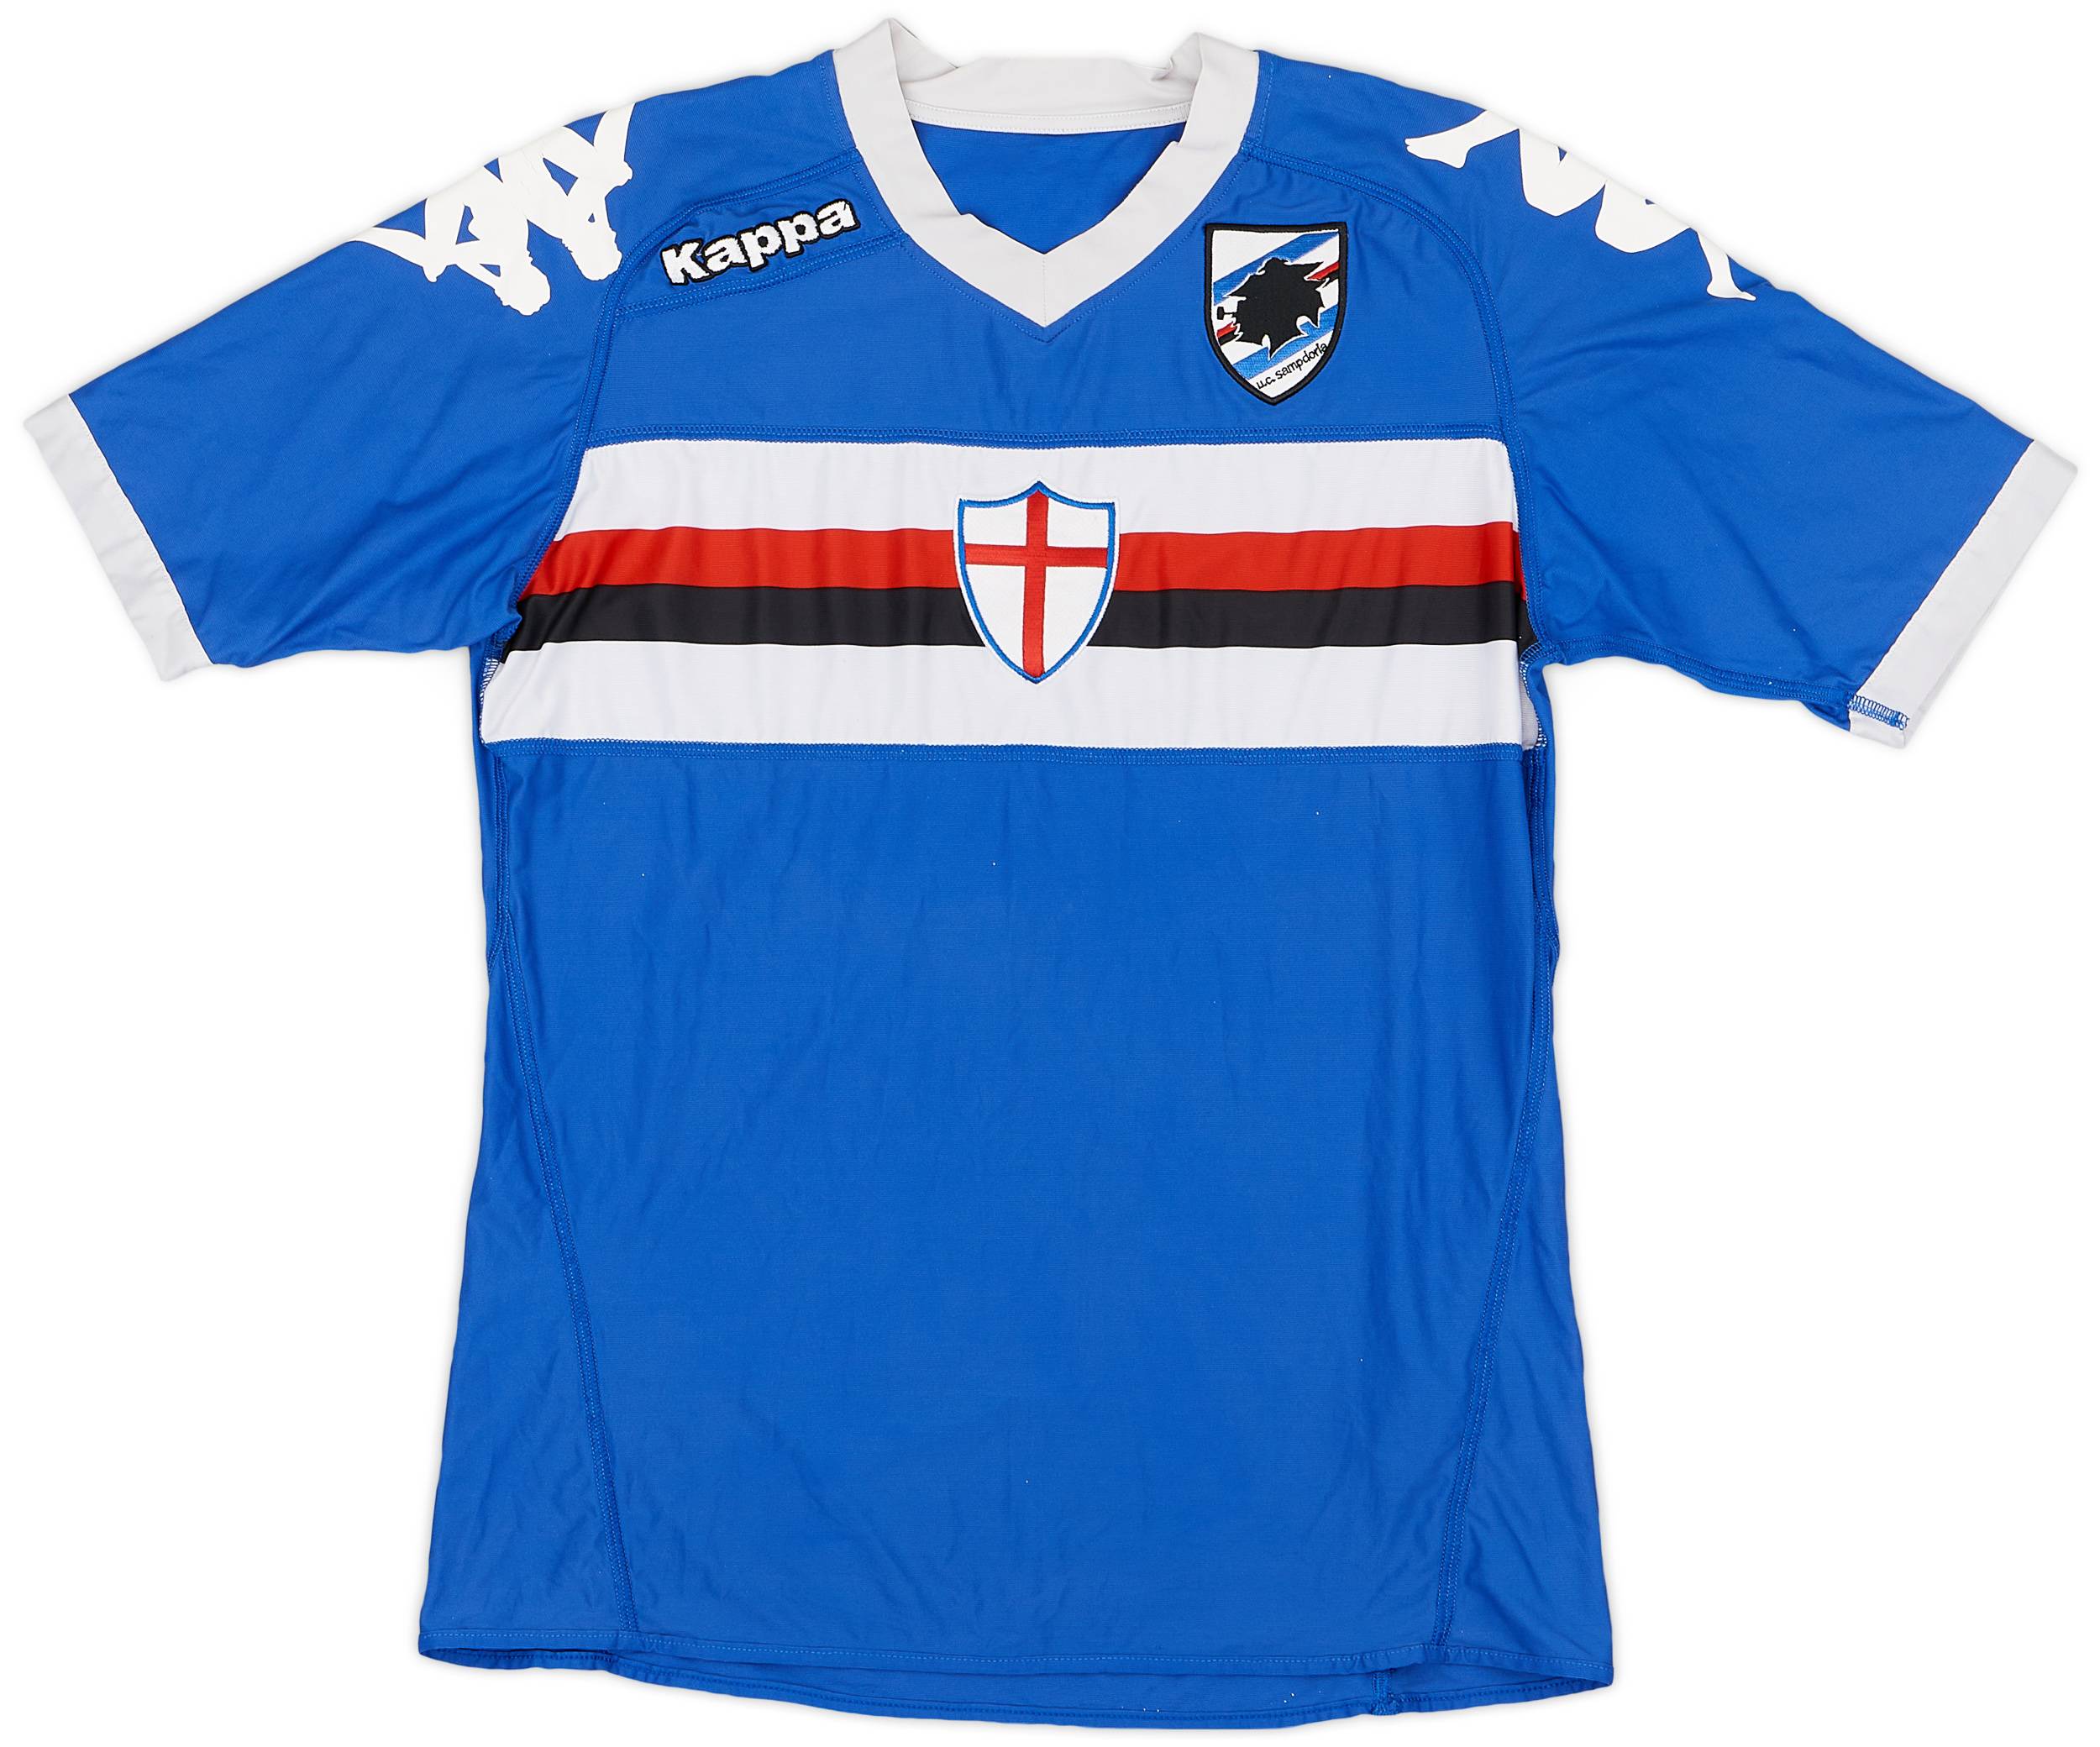 2010-11 Sampdoria Home Shirt - 6/10 - (M)